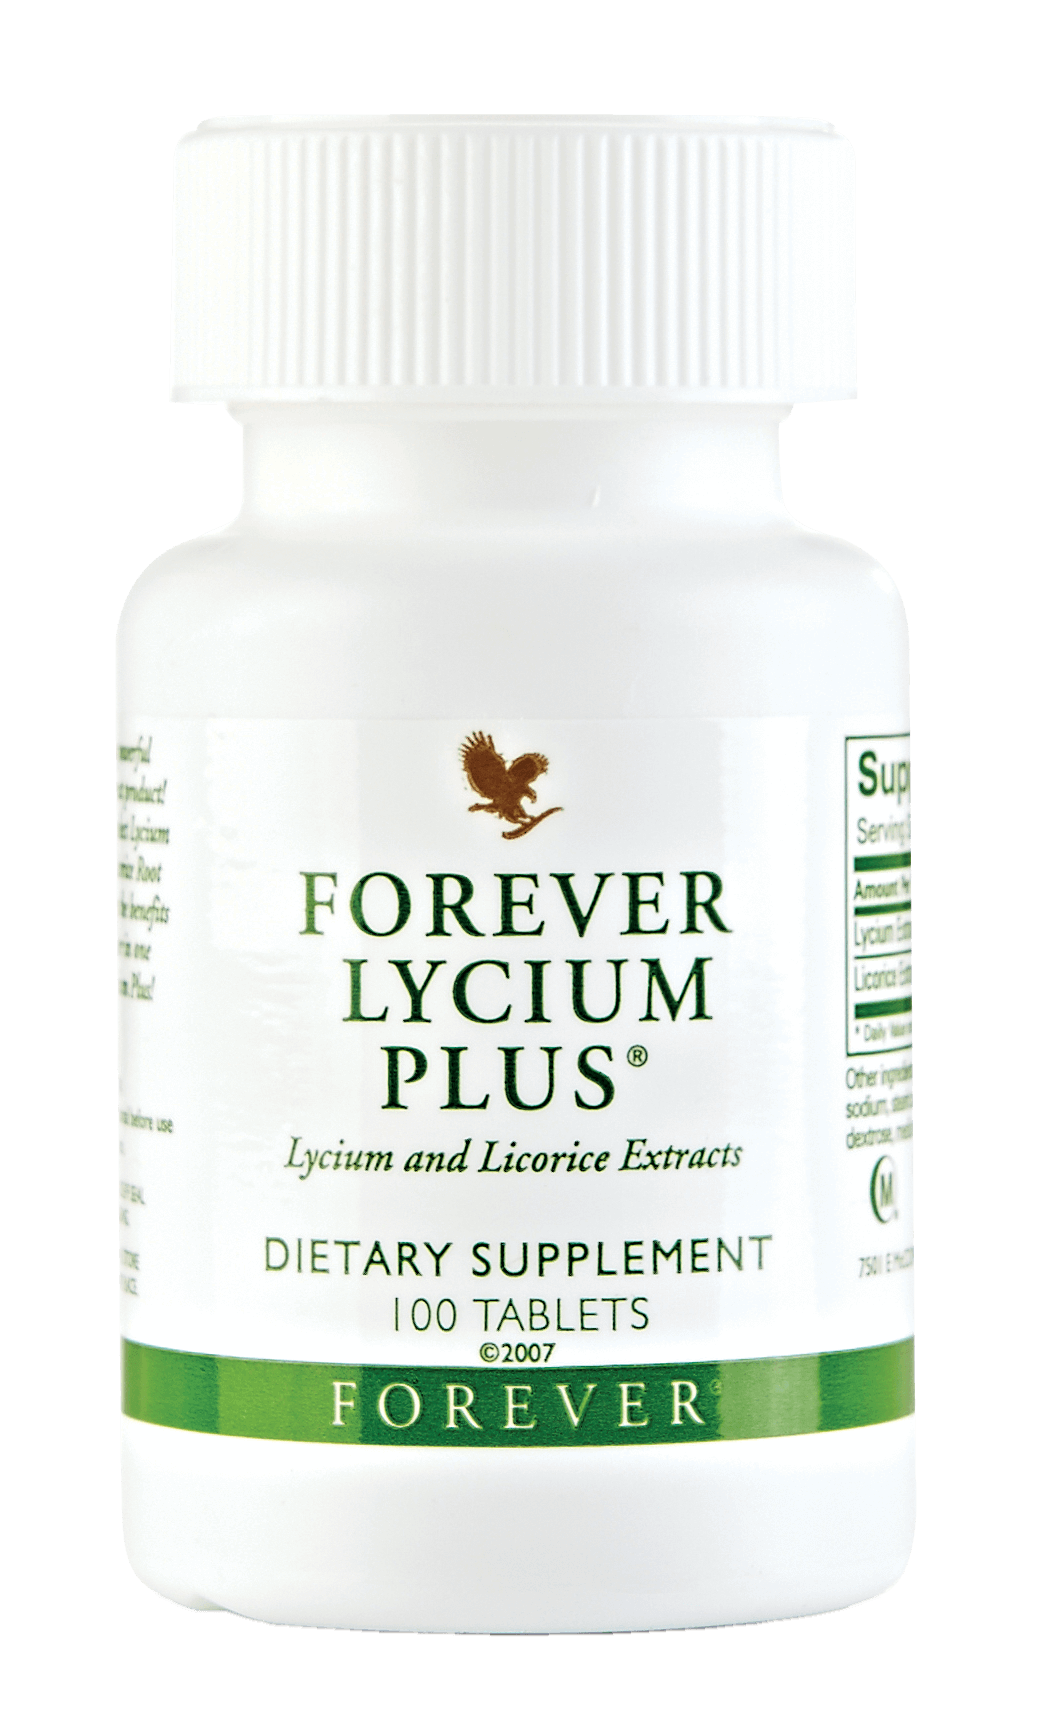 Forever Lycium plus